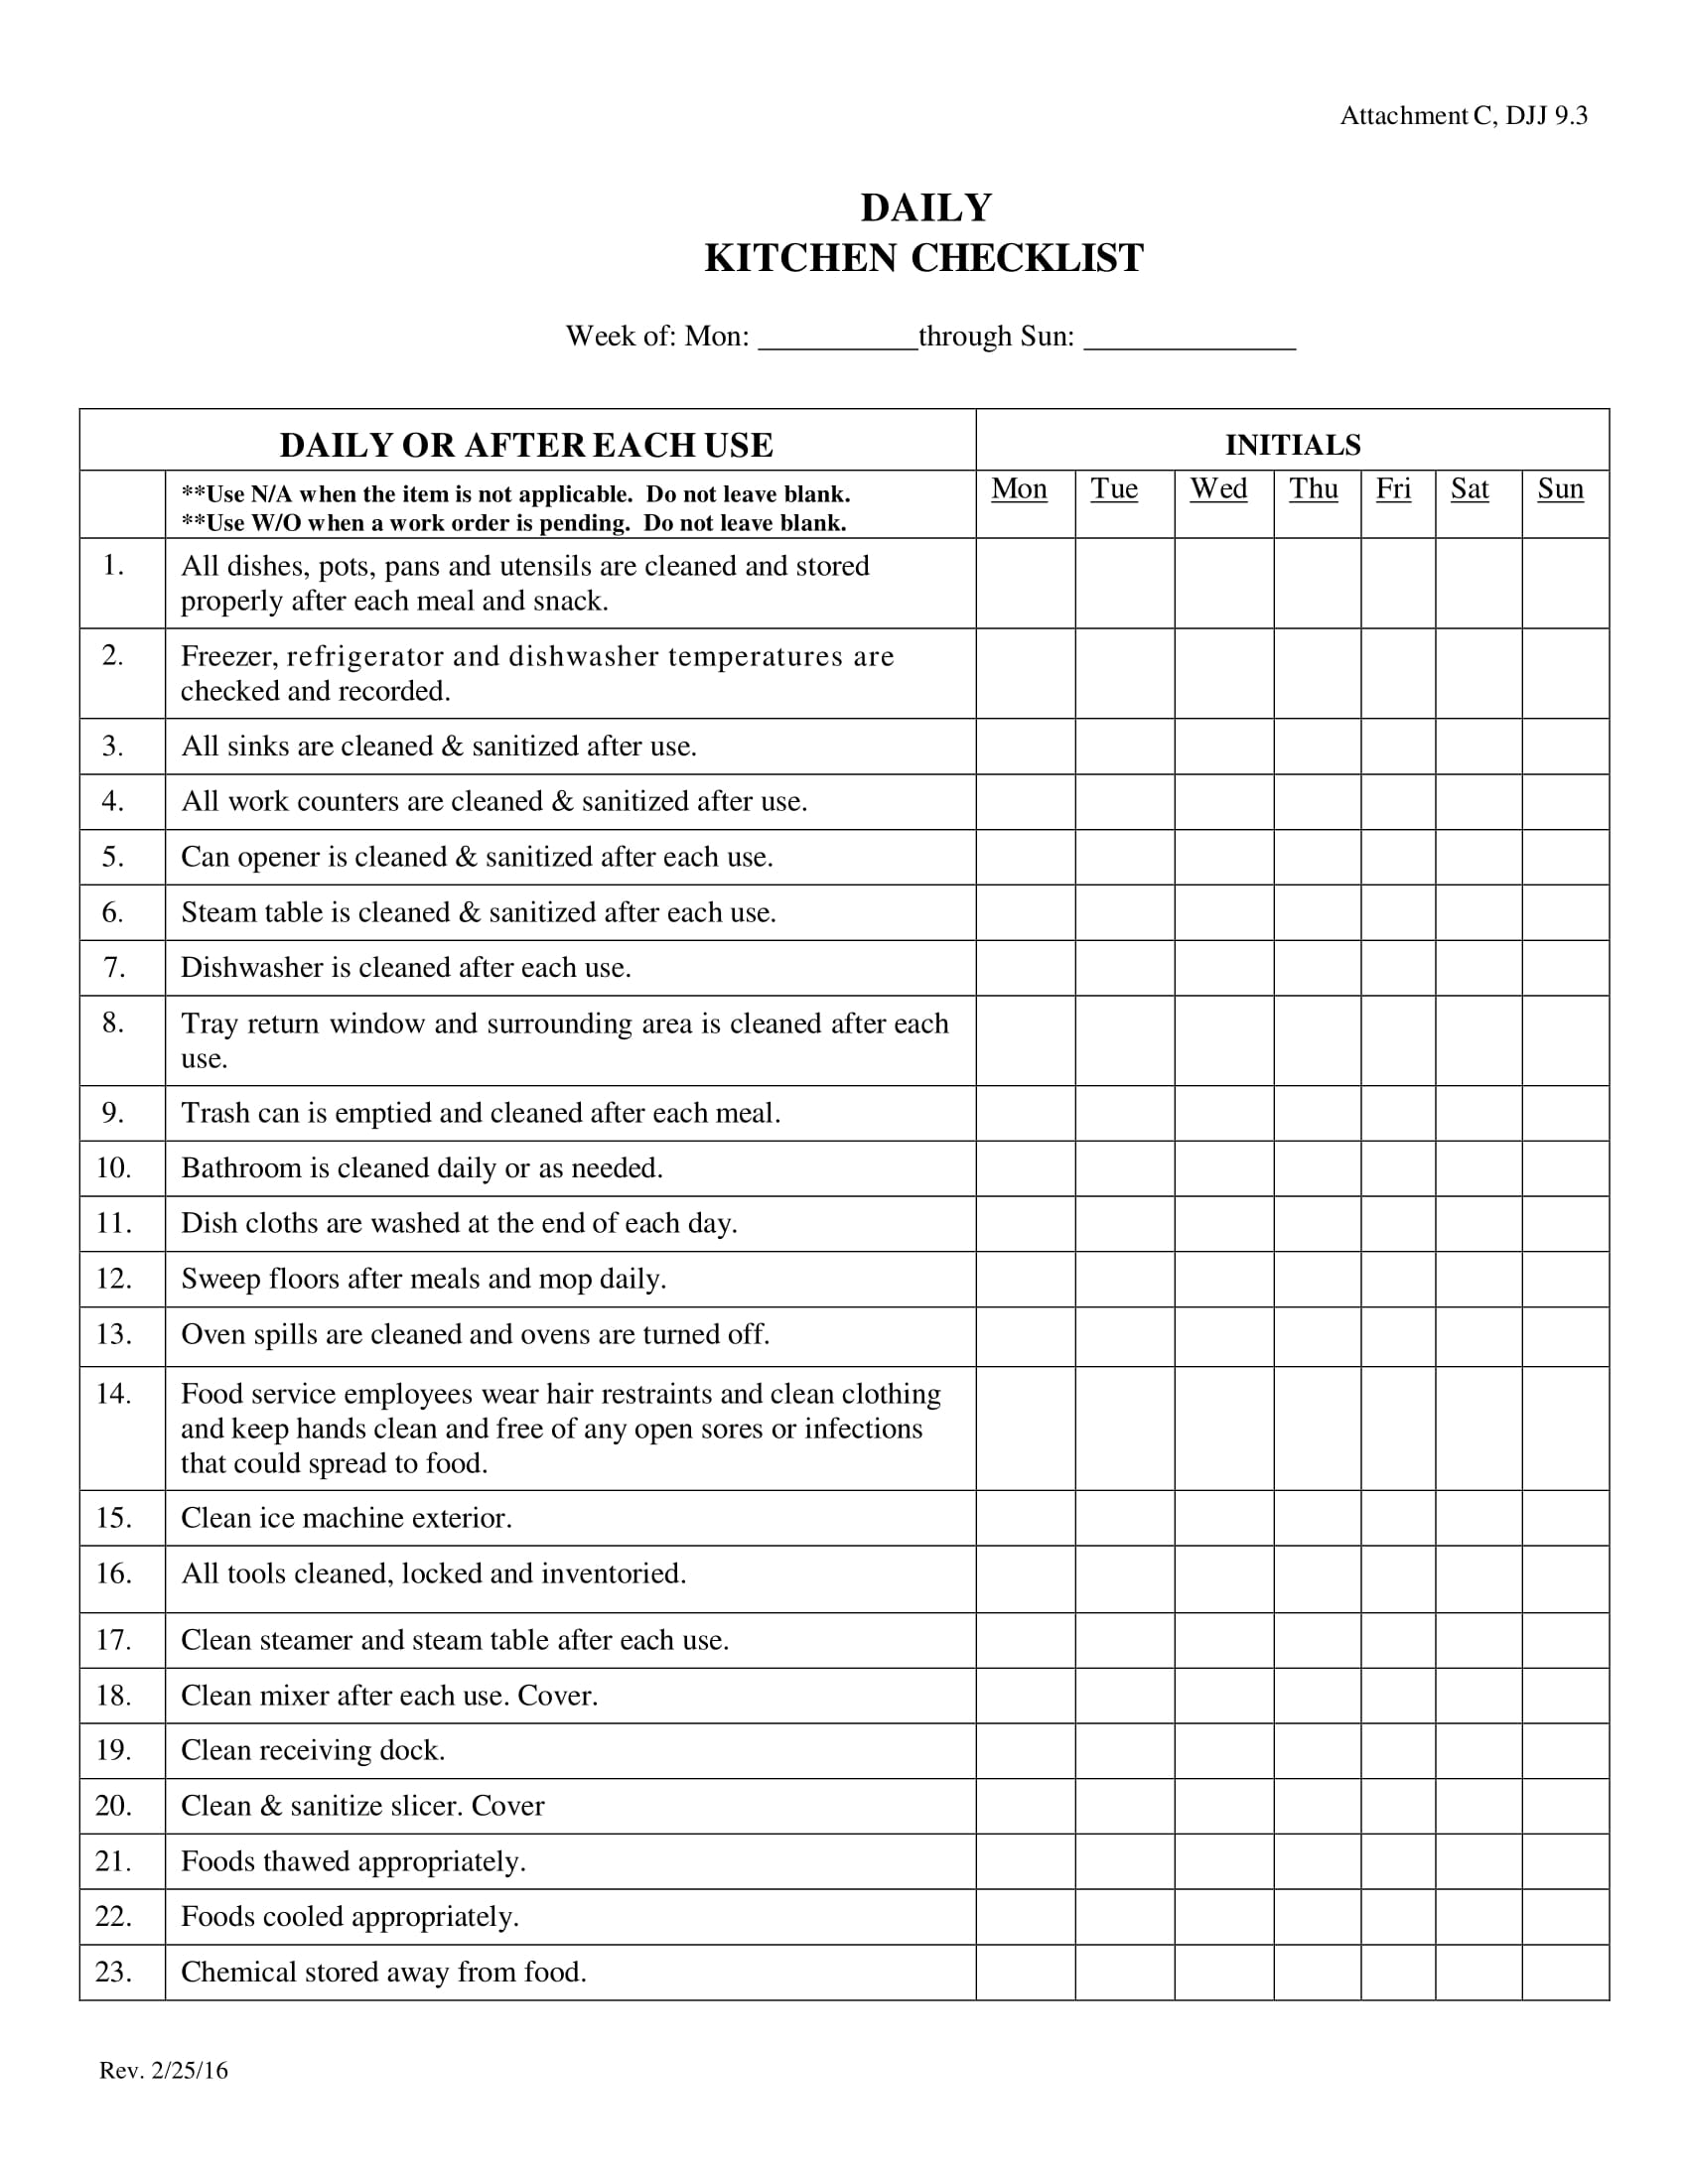 daily schedule for kitchen checklist 1